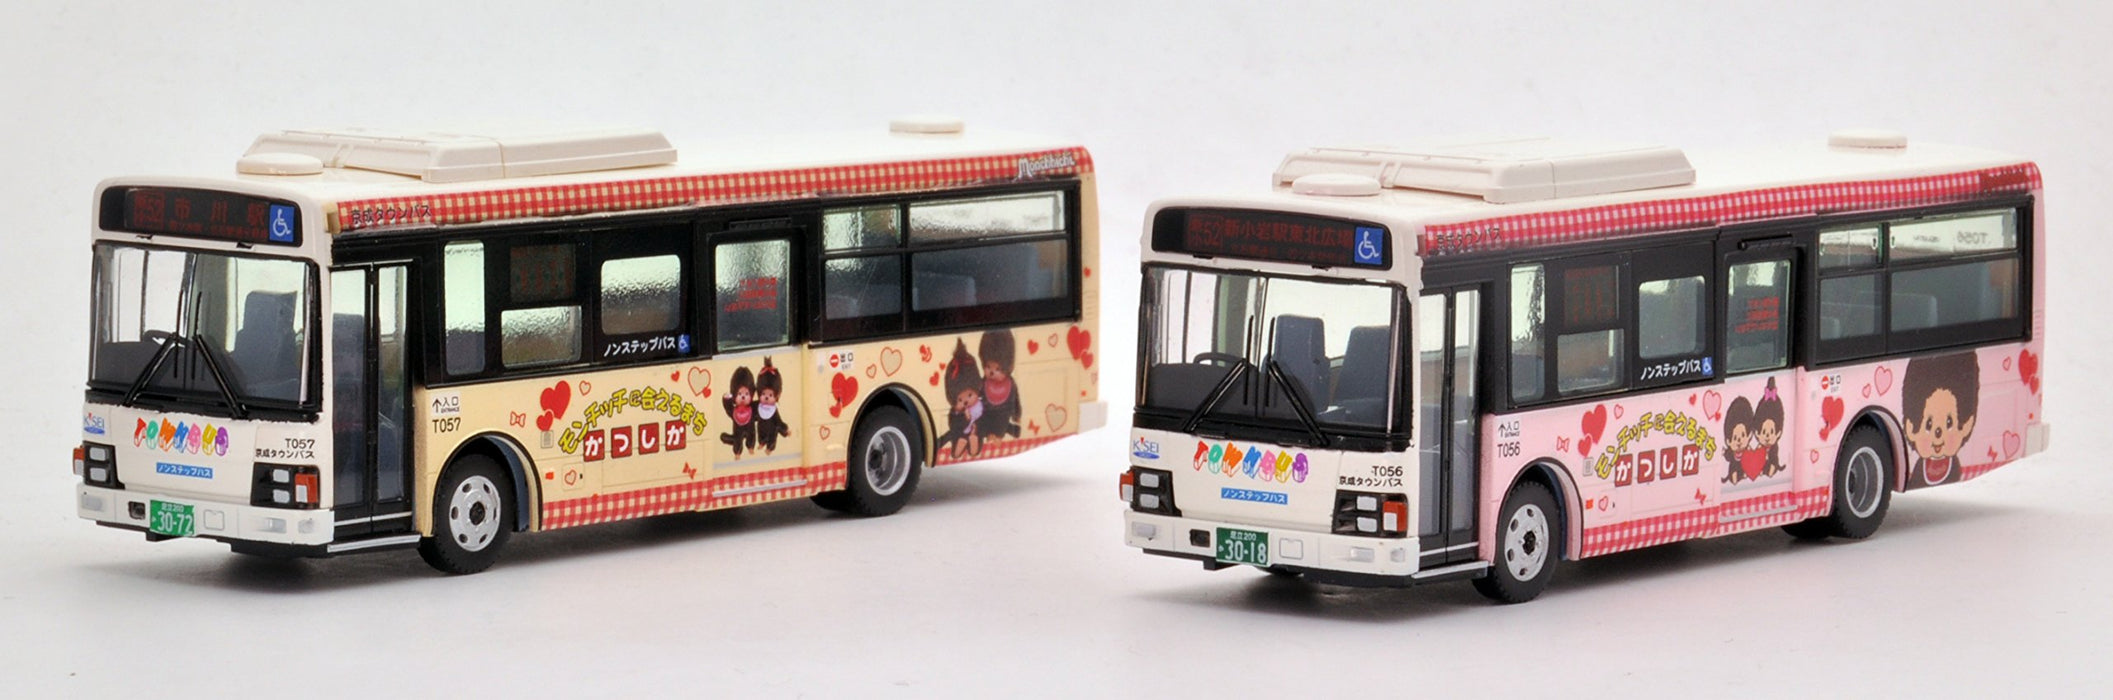 Tomytec National Bus Collection Jh022 1/80 Keisei Town Katsushika Wrapping Bus Photo Edition